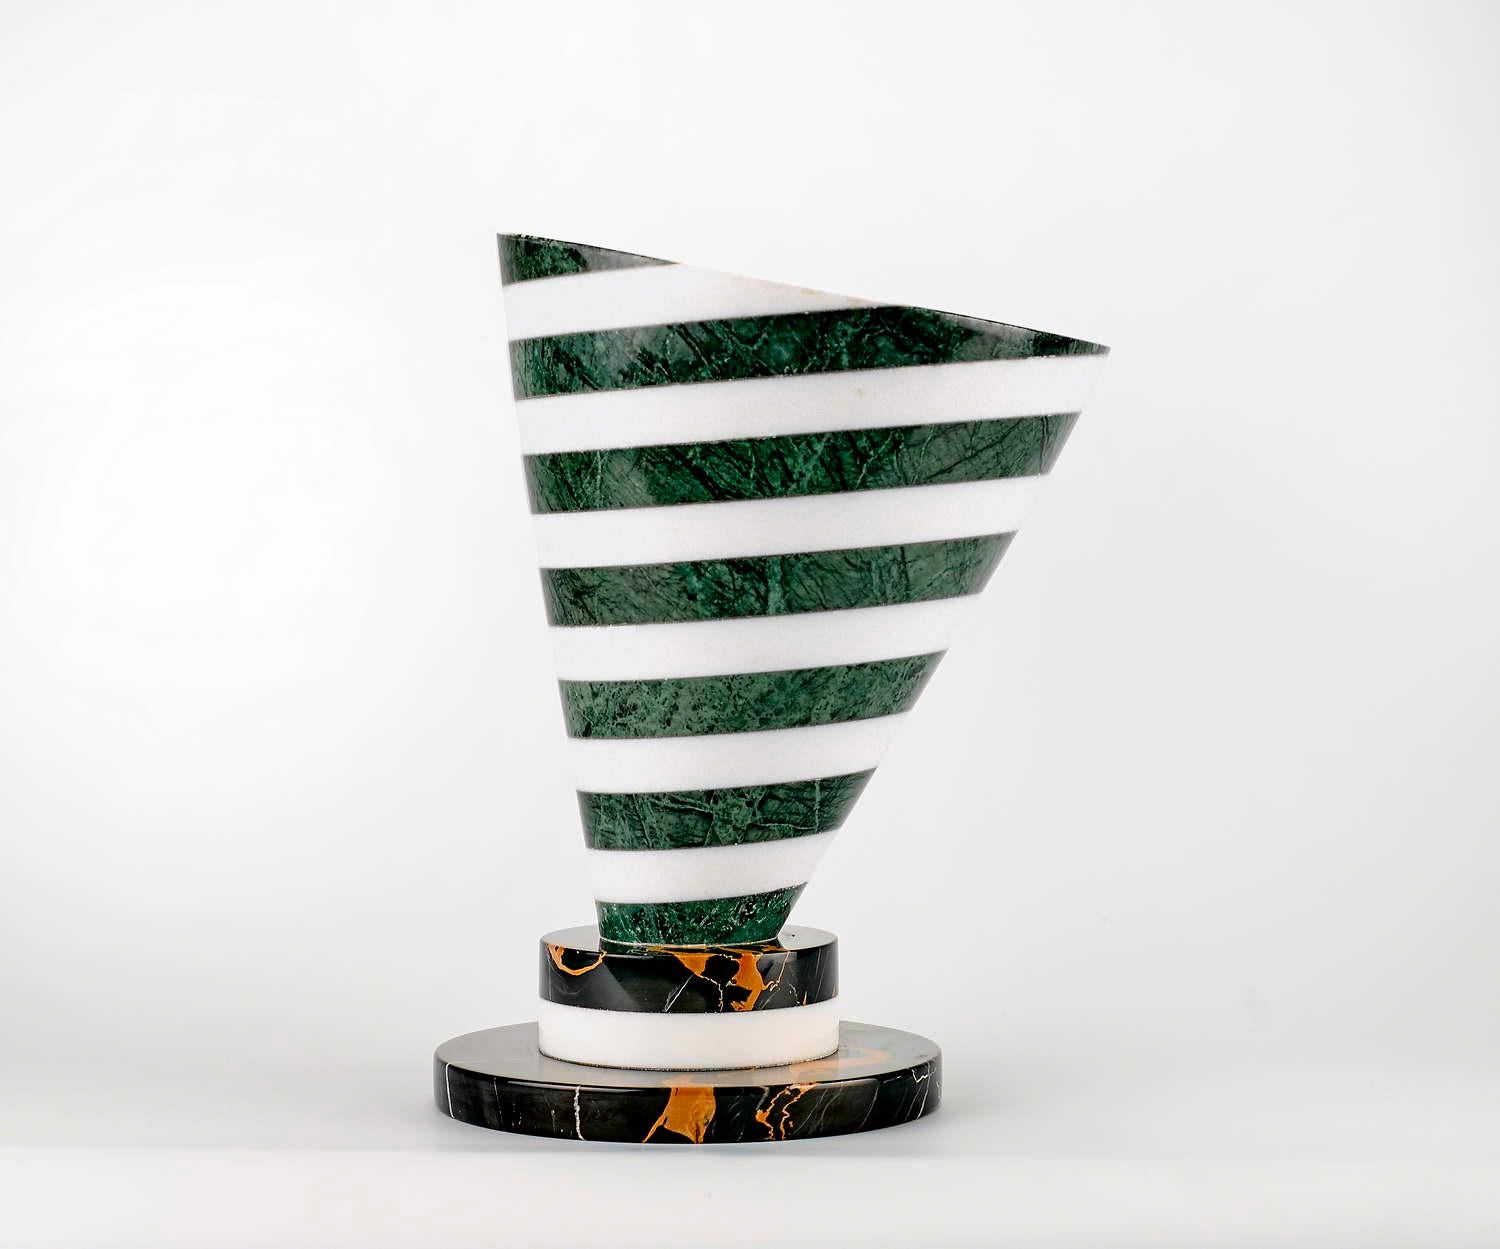 Vase en marbre conçu par Martine Bedin

Taille : Diamètre cm 22 x hauteur 30
Matériaux : Nero Marquina - Bianco Carrara - Verde Alpi
Concepteur : Martine Bedin.